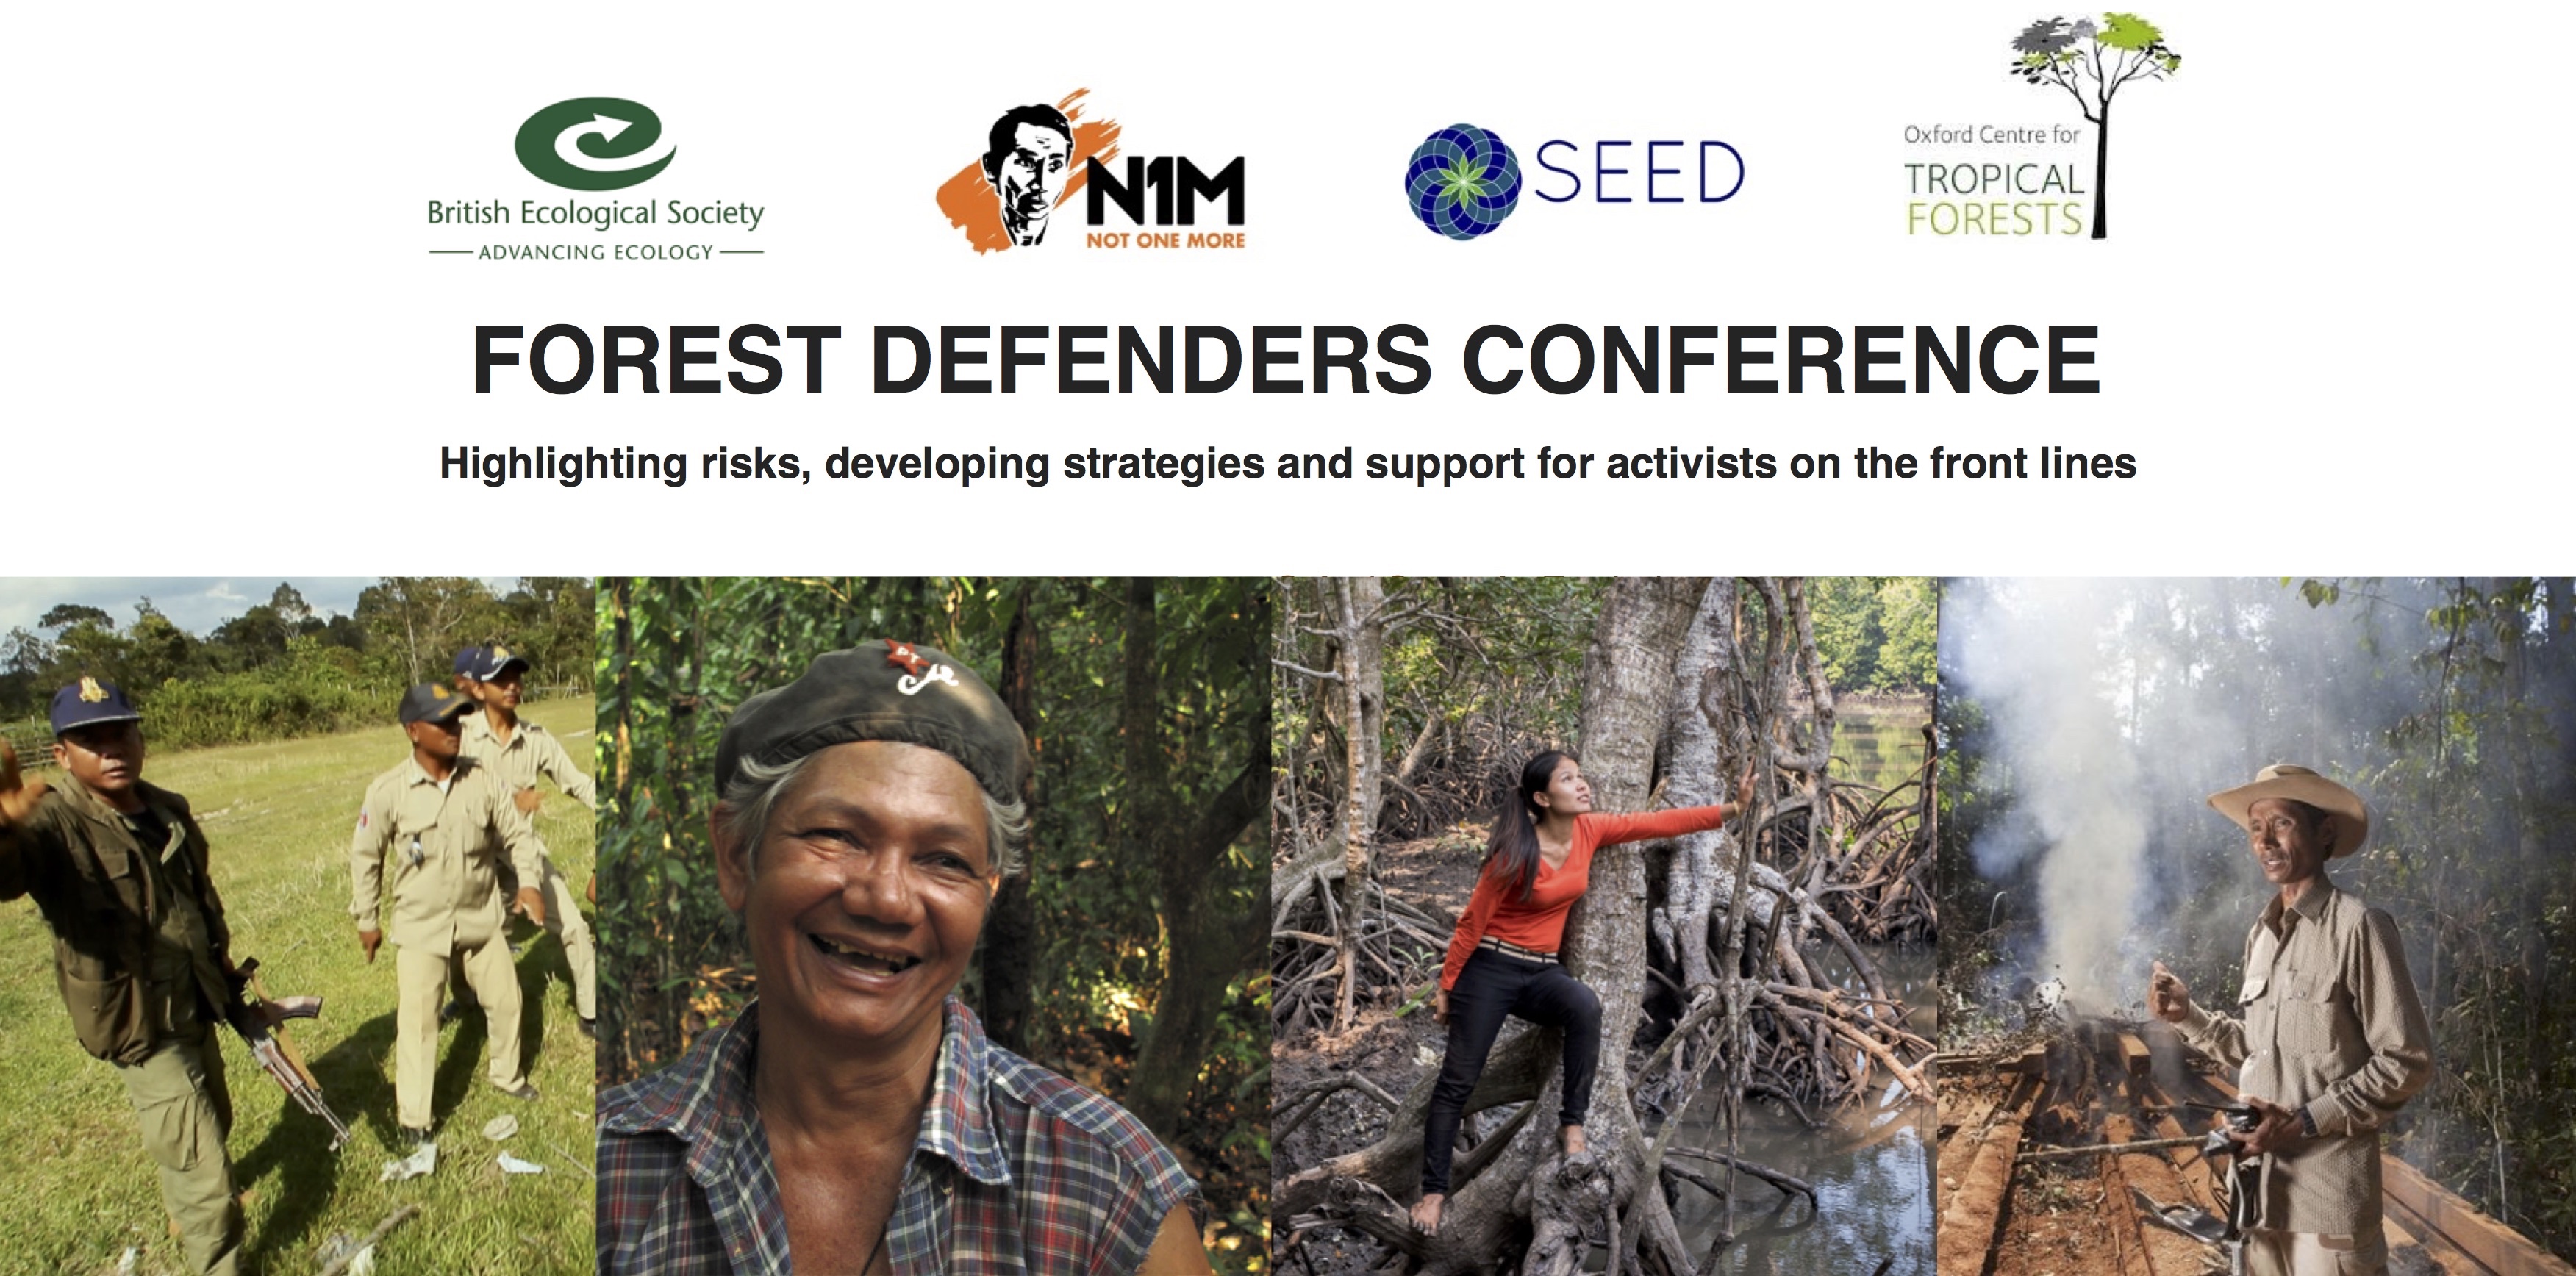 Forest Defenders Conference, June 2017, UK